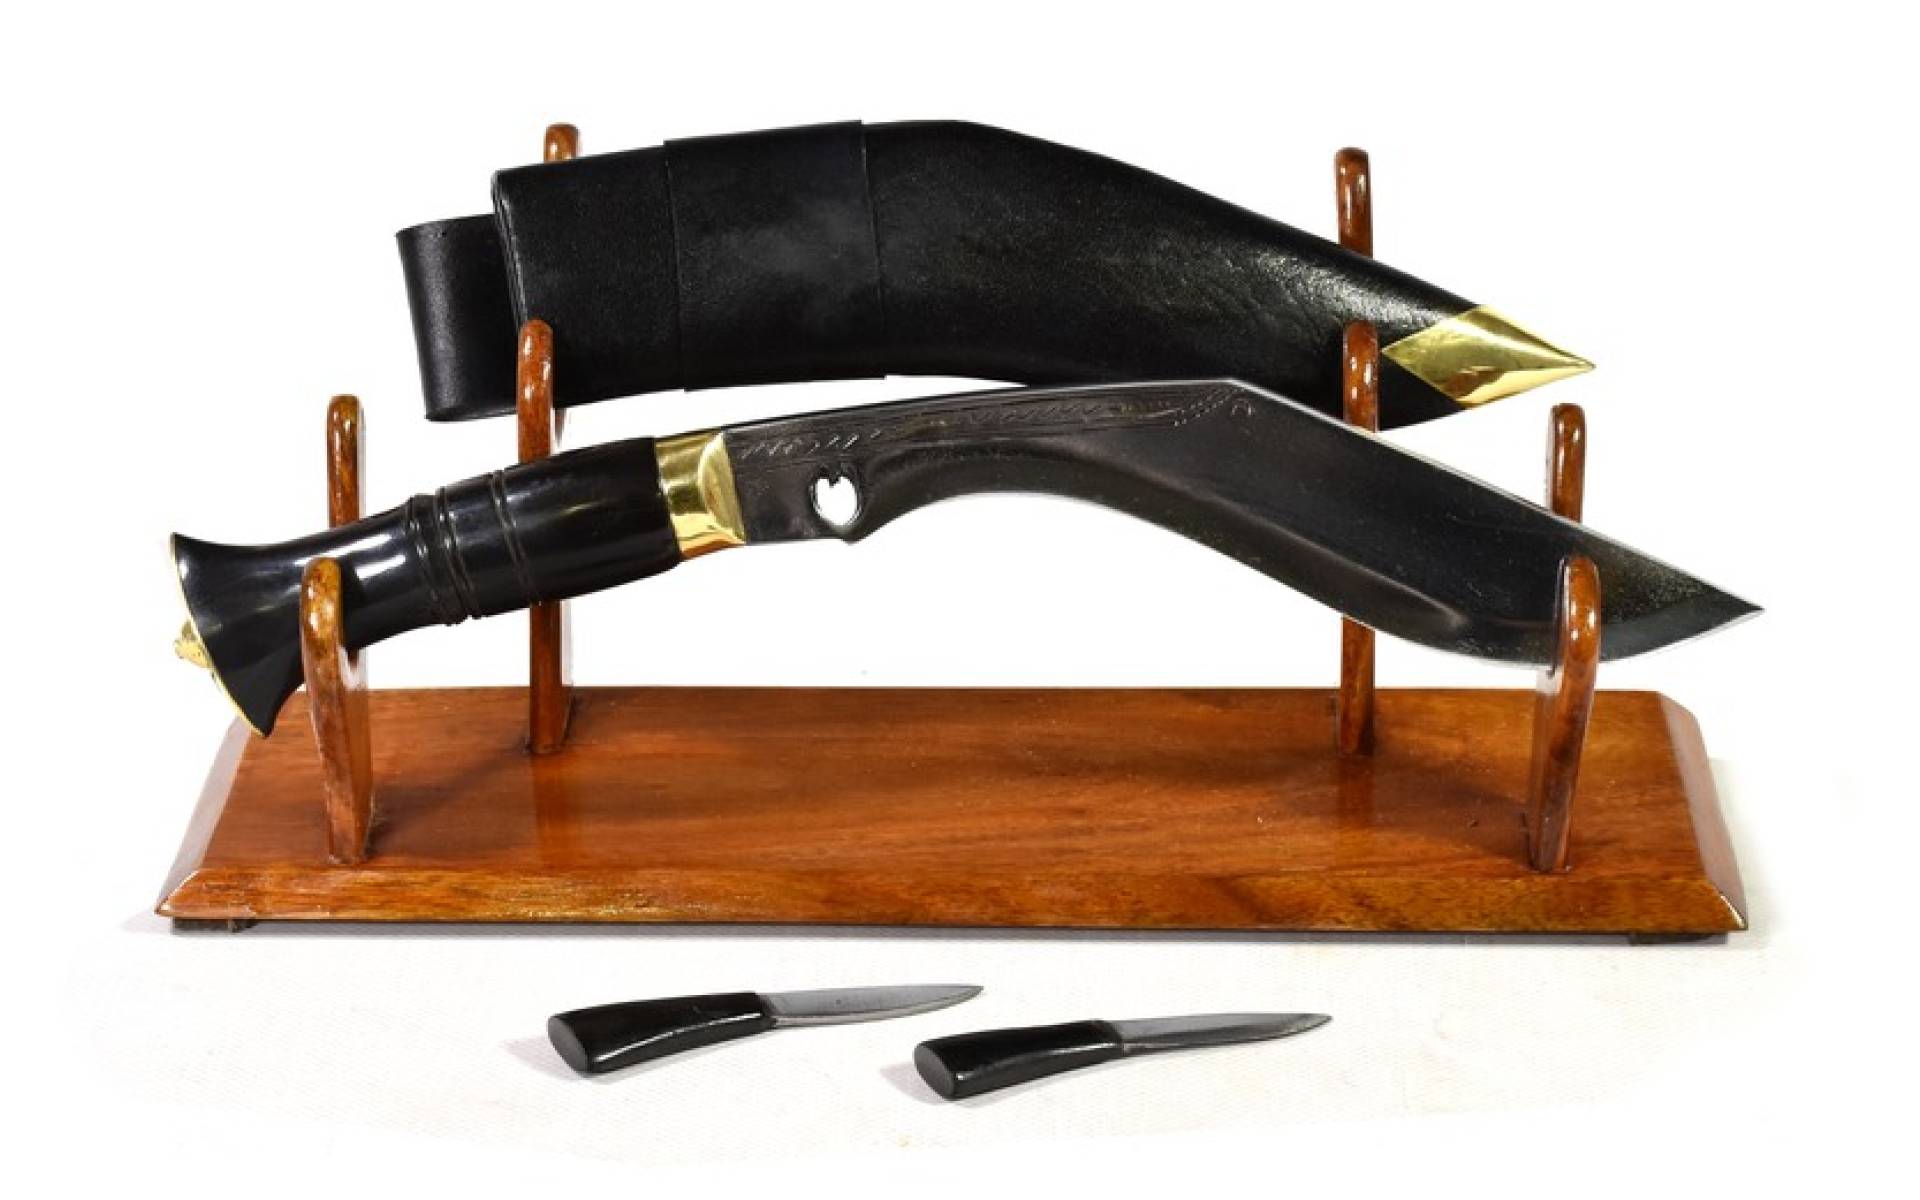 Khukri nôž Balance 9", rohovinová rukoväť, celý nôž 36cm, čepeľ 23cm